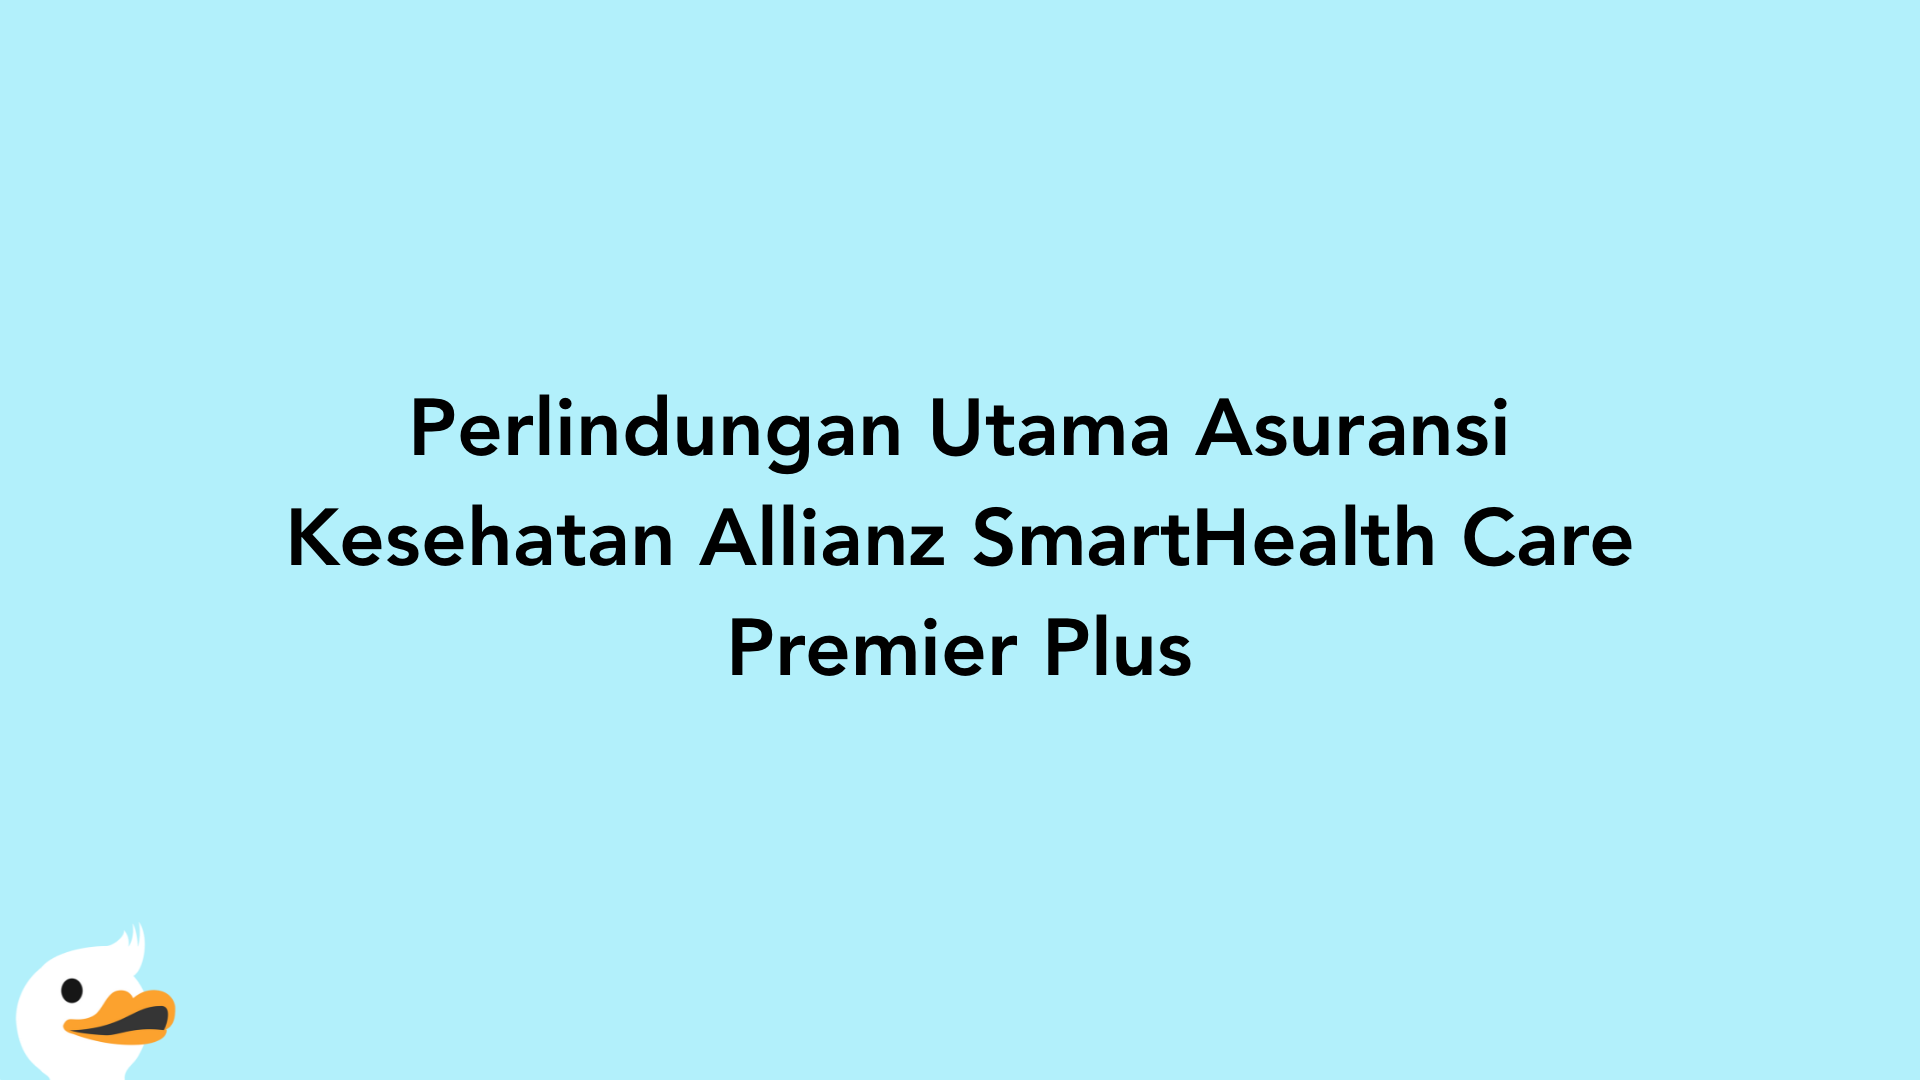 Perlindungan Utama Asuransi Kesehatan Allianz SmartHealth Care Premier Plus